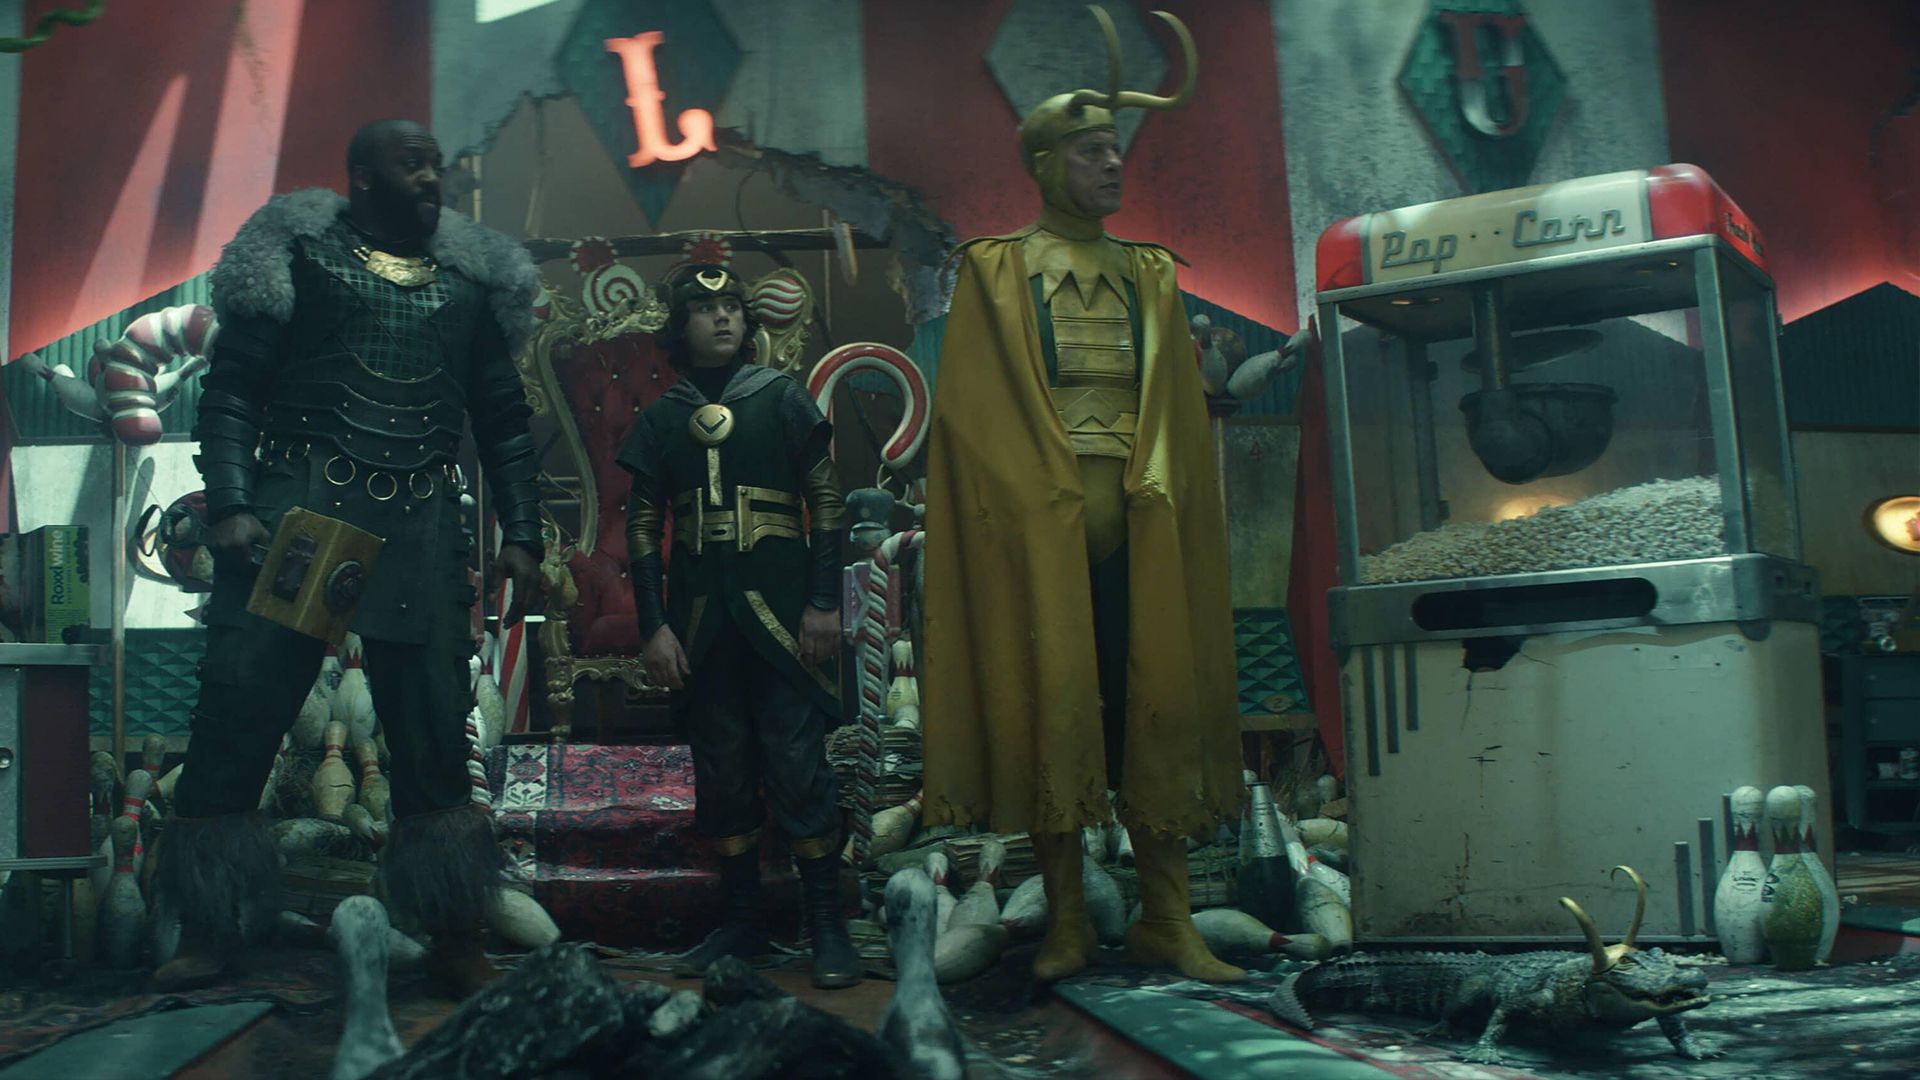 ریچارد ای گرانت در نقش کلاسیک لوکی، تمساح لوکی، جک ویل در نقش کید لوکی و دئوبیا اوپاری در نقش Boastful Loki در قسمت پنجم سریال Loki